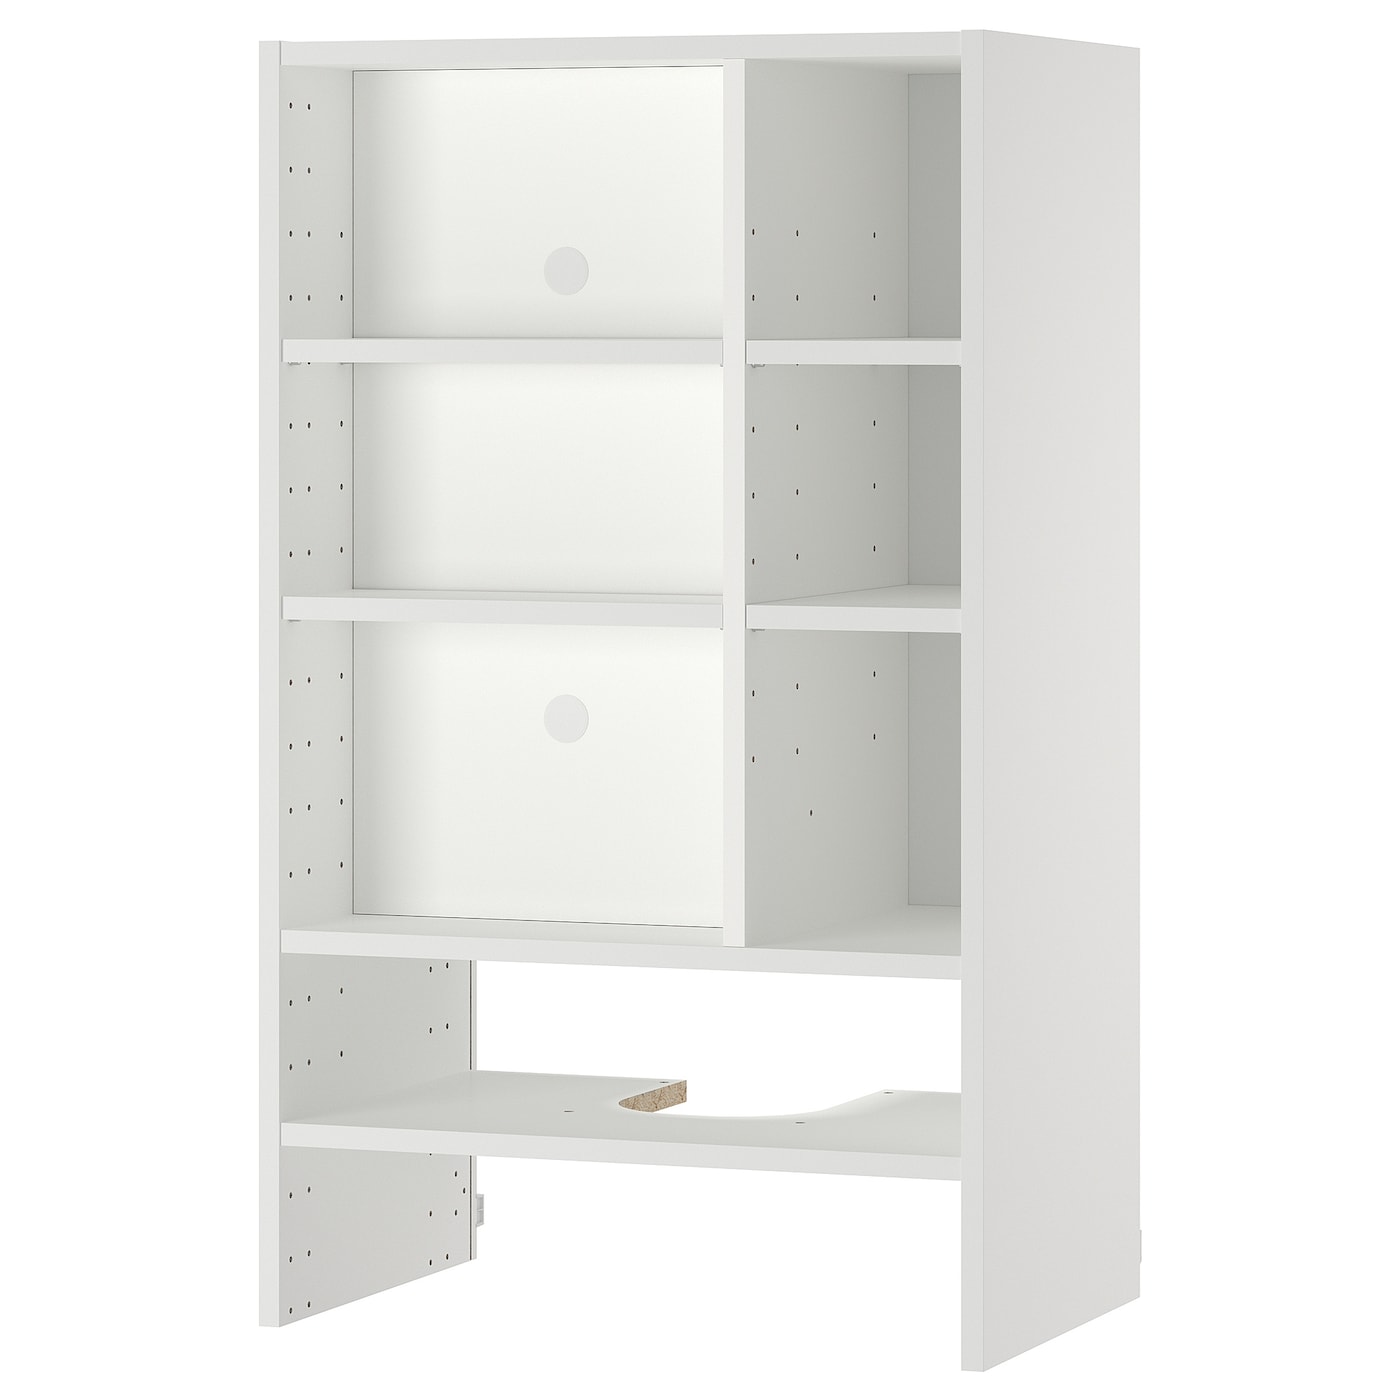 Шкафчик навесной для встроенной вытяжки -  METOD  IKEA/  МЕТОД ИКЕА, 100х60 см, белый